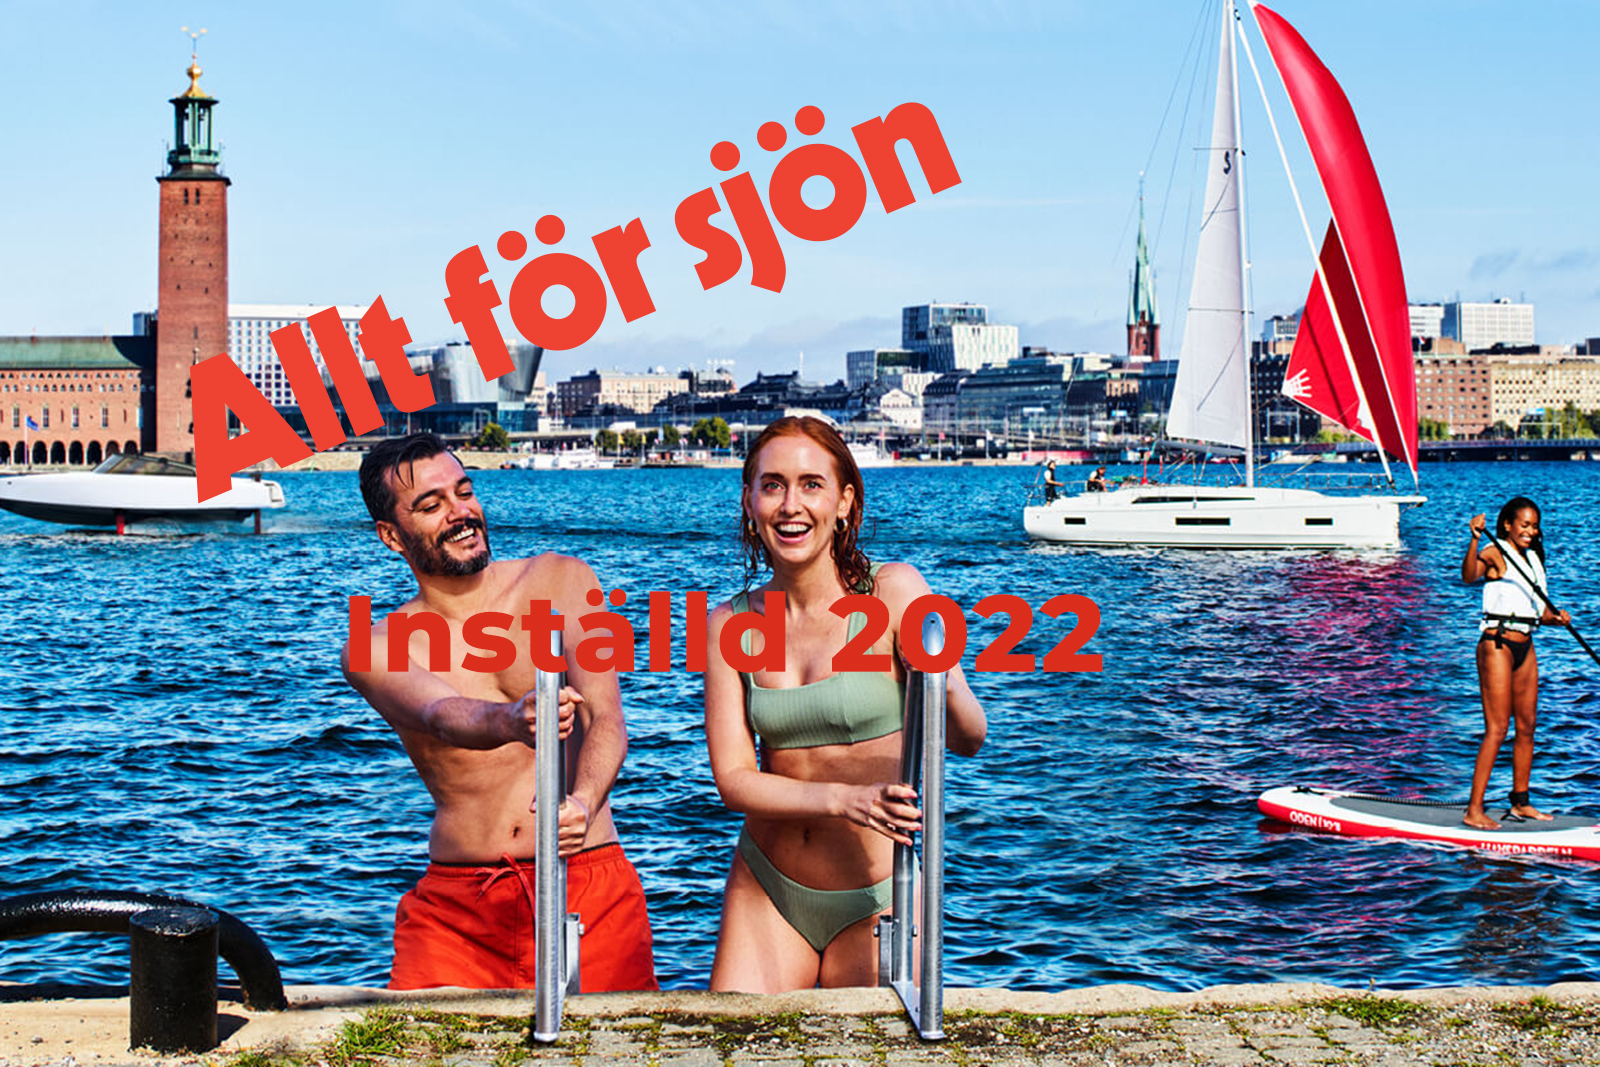 Allt för sjön i Stockholm är inställd 2022